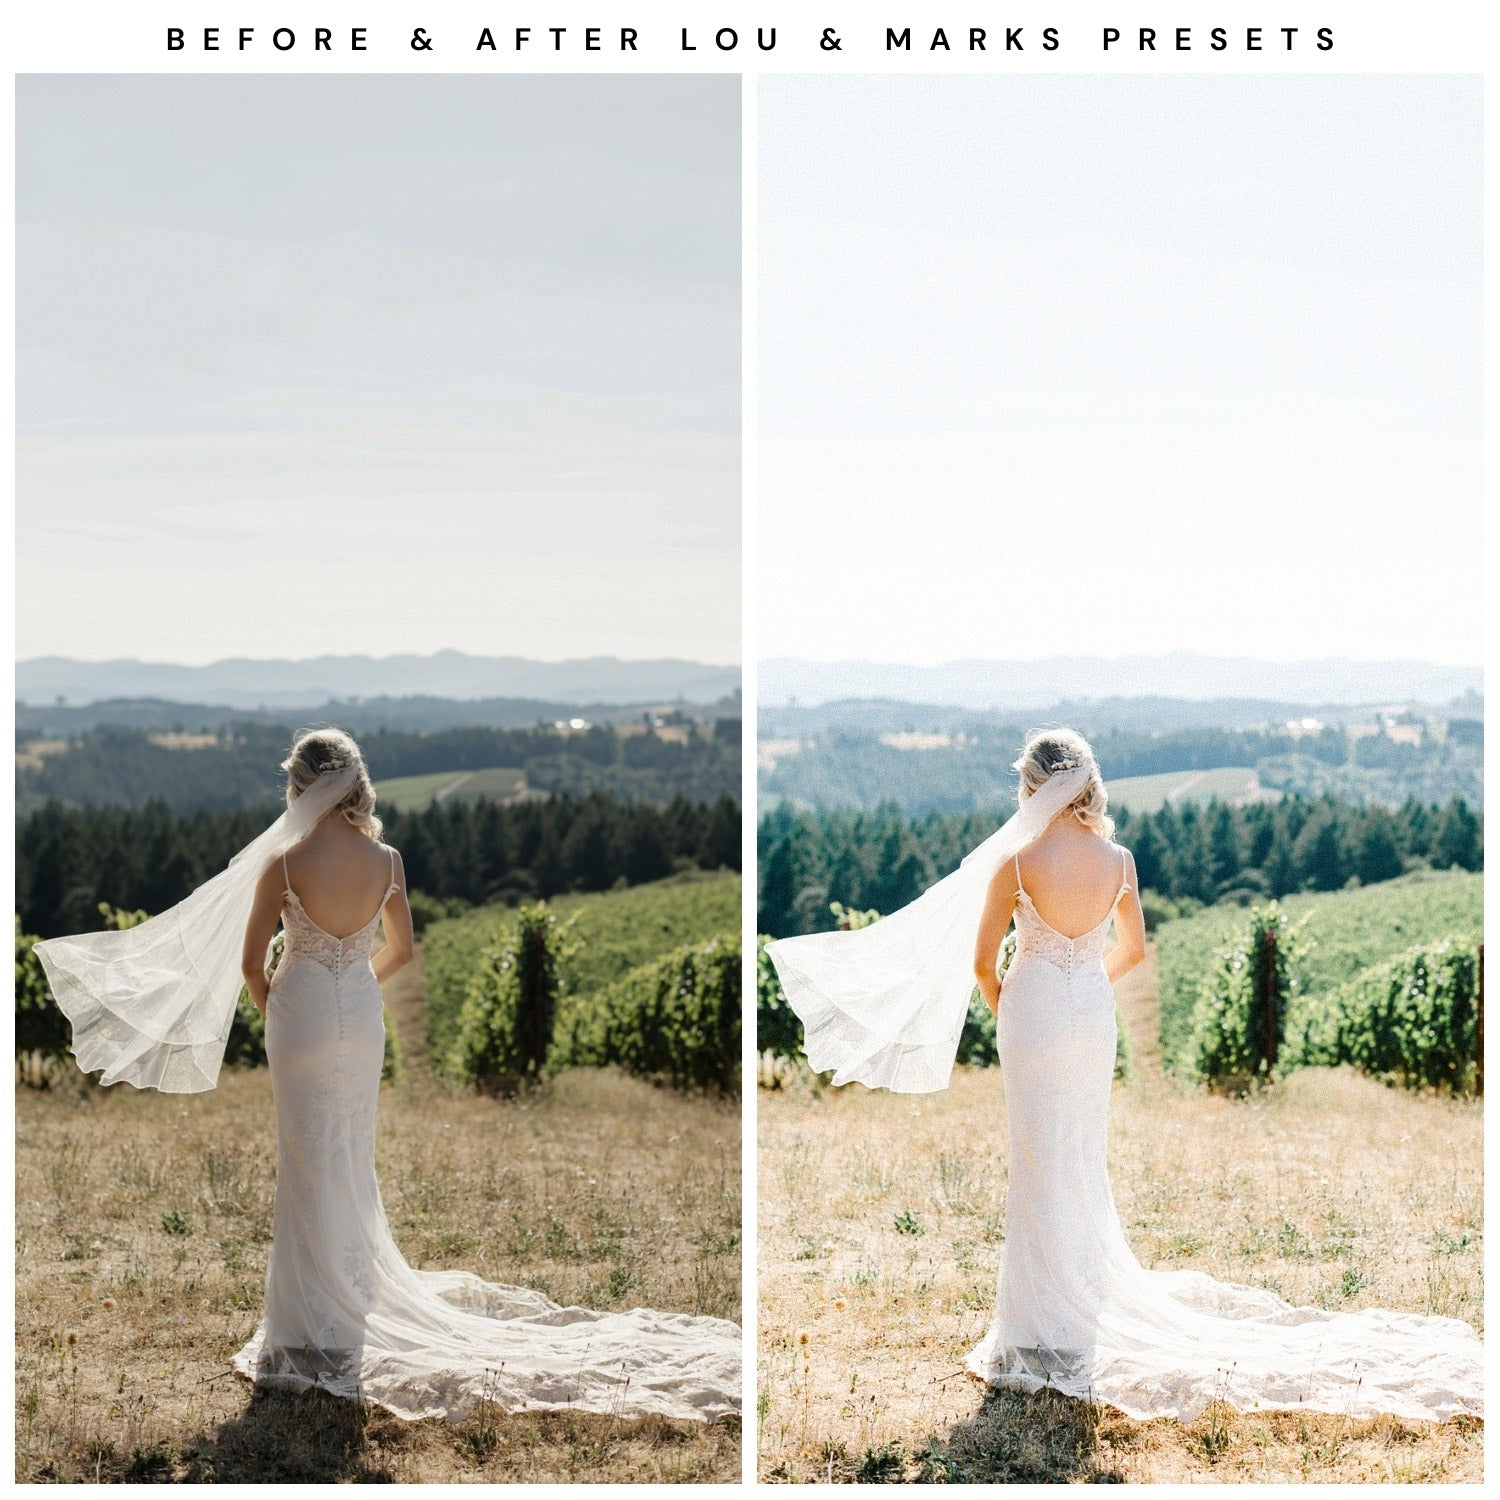 Kodak Portra 400 Film Filter Lightroom Presets For Adobe Lightroom Mobile & Desktop By Lou And Marks Presets wedding